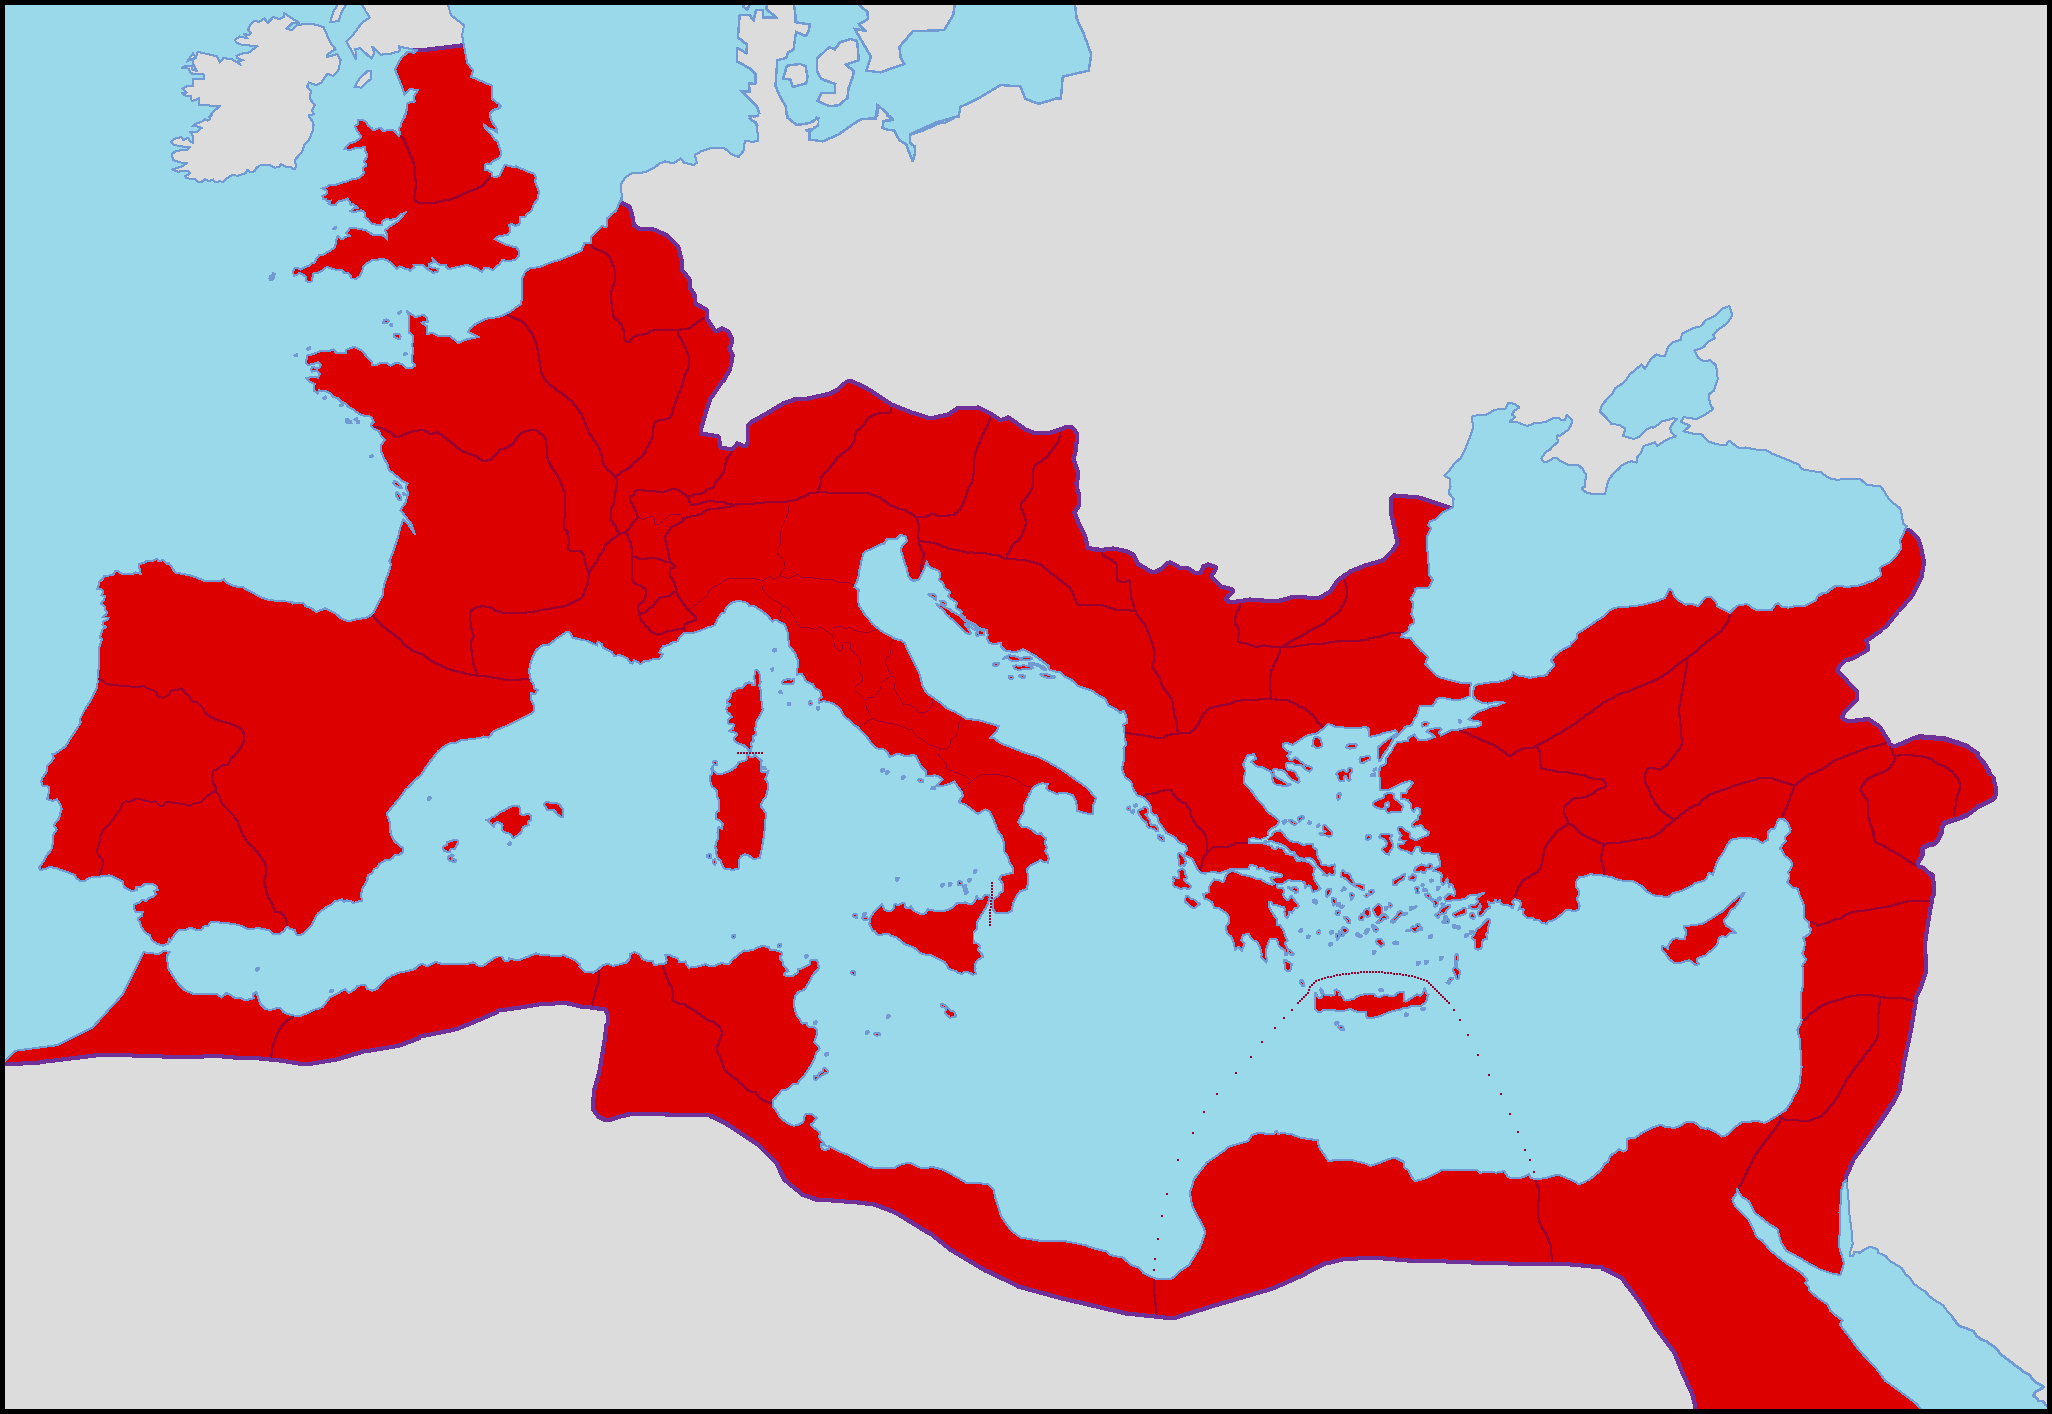 The Roman Empire in 280